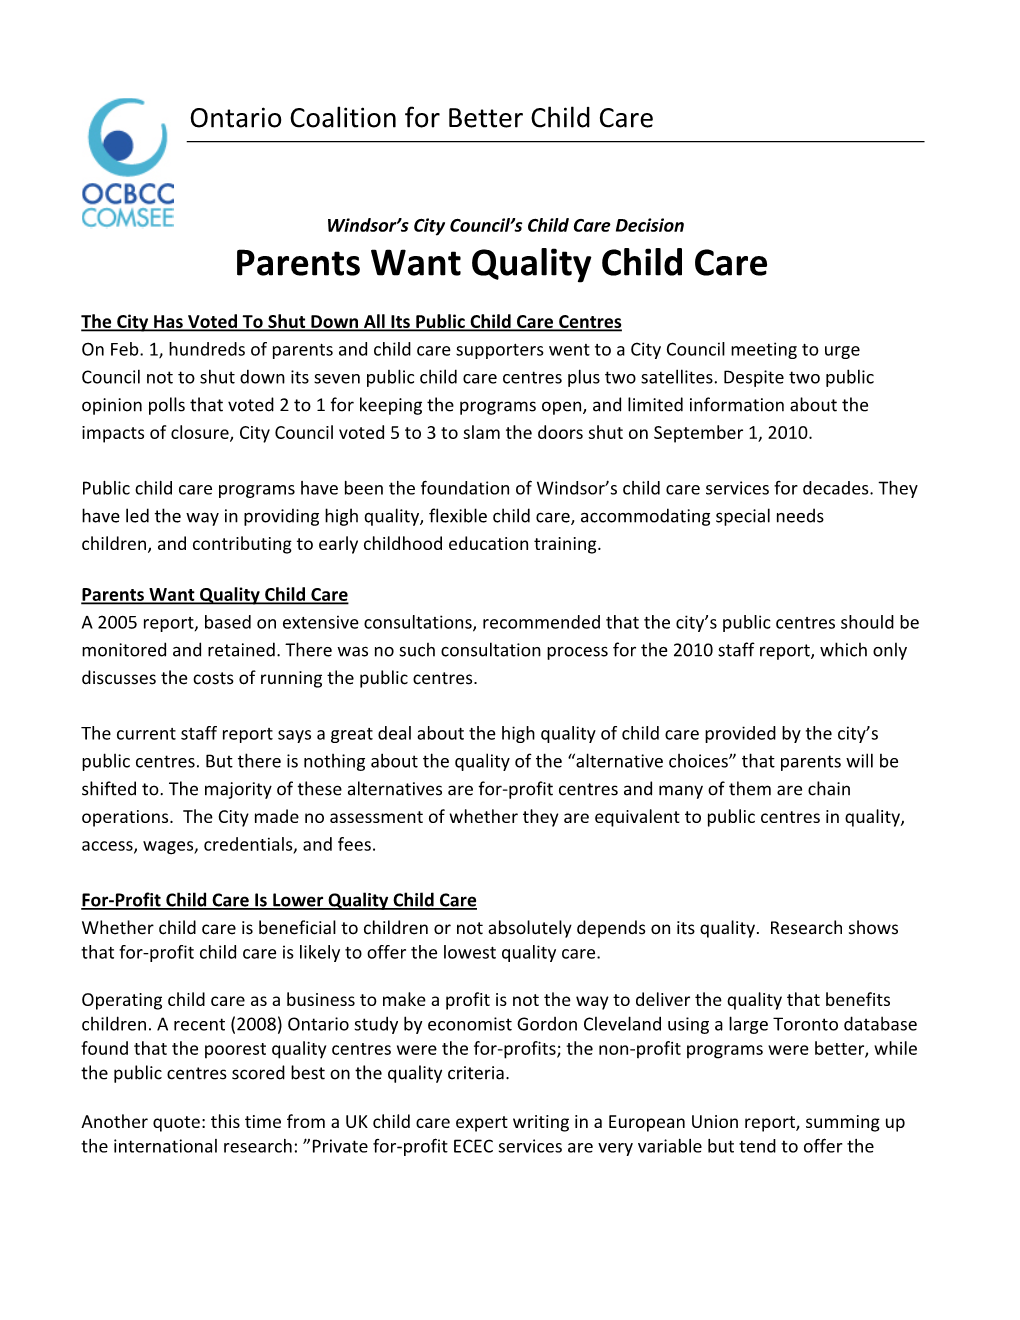 Parents Want Quality Child Care